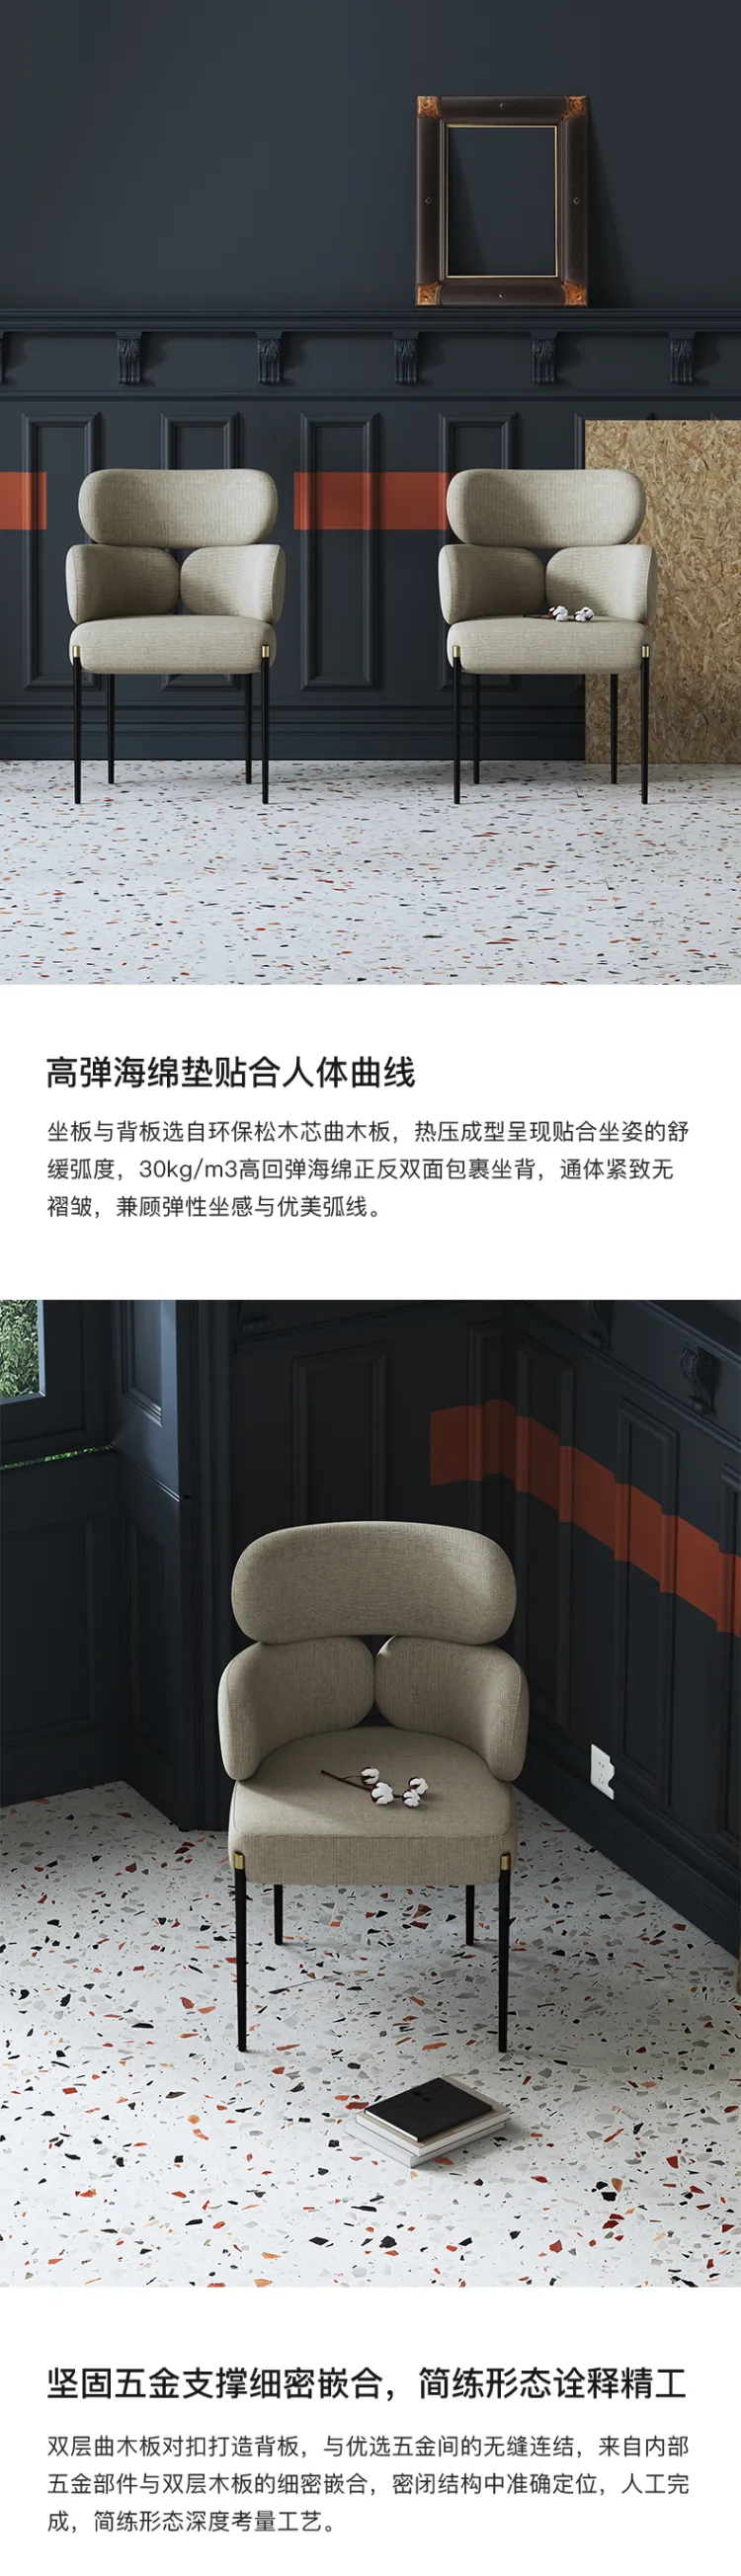 洛品家具 轻奢餐椅现代简约家用小户型创意实用椅子 YX-102(图4)